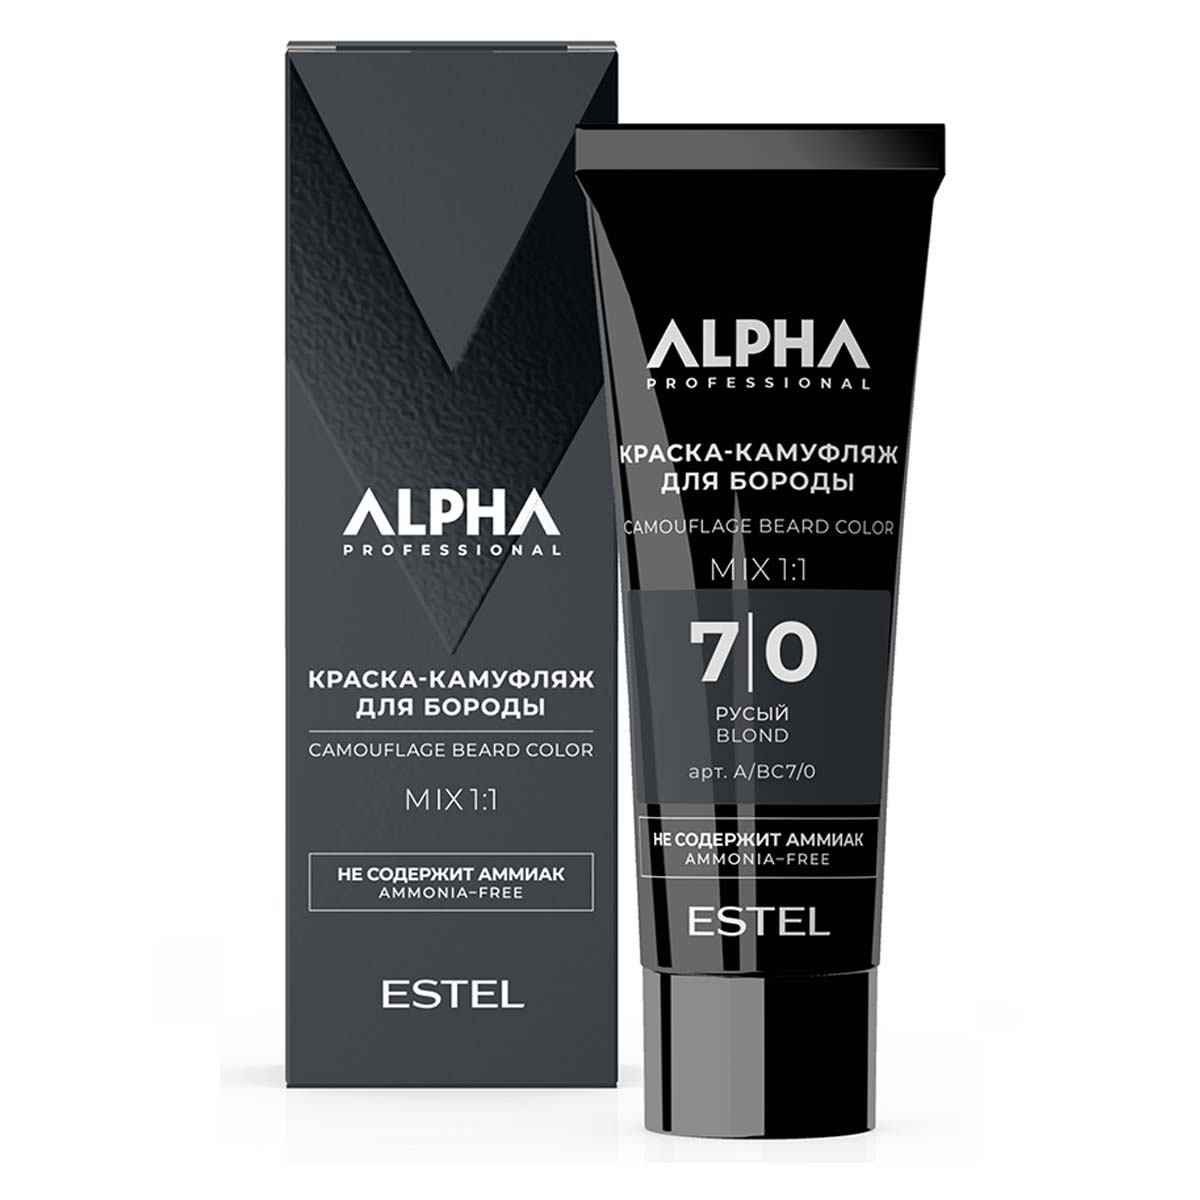 Крем-камуфляж для окрашивания бороды ESTEL PROFESSIONAL Alpha Homme 7.0 русый 40 мл краска камуфляж для бороды alpha a bc7 0 7 0 русый 40 мл